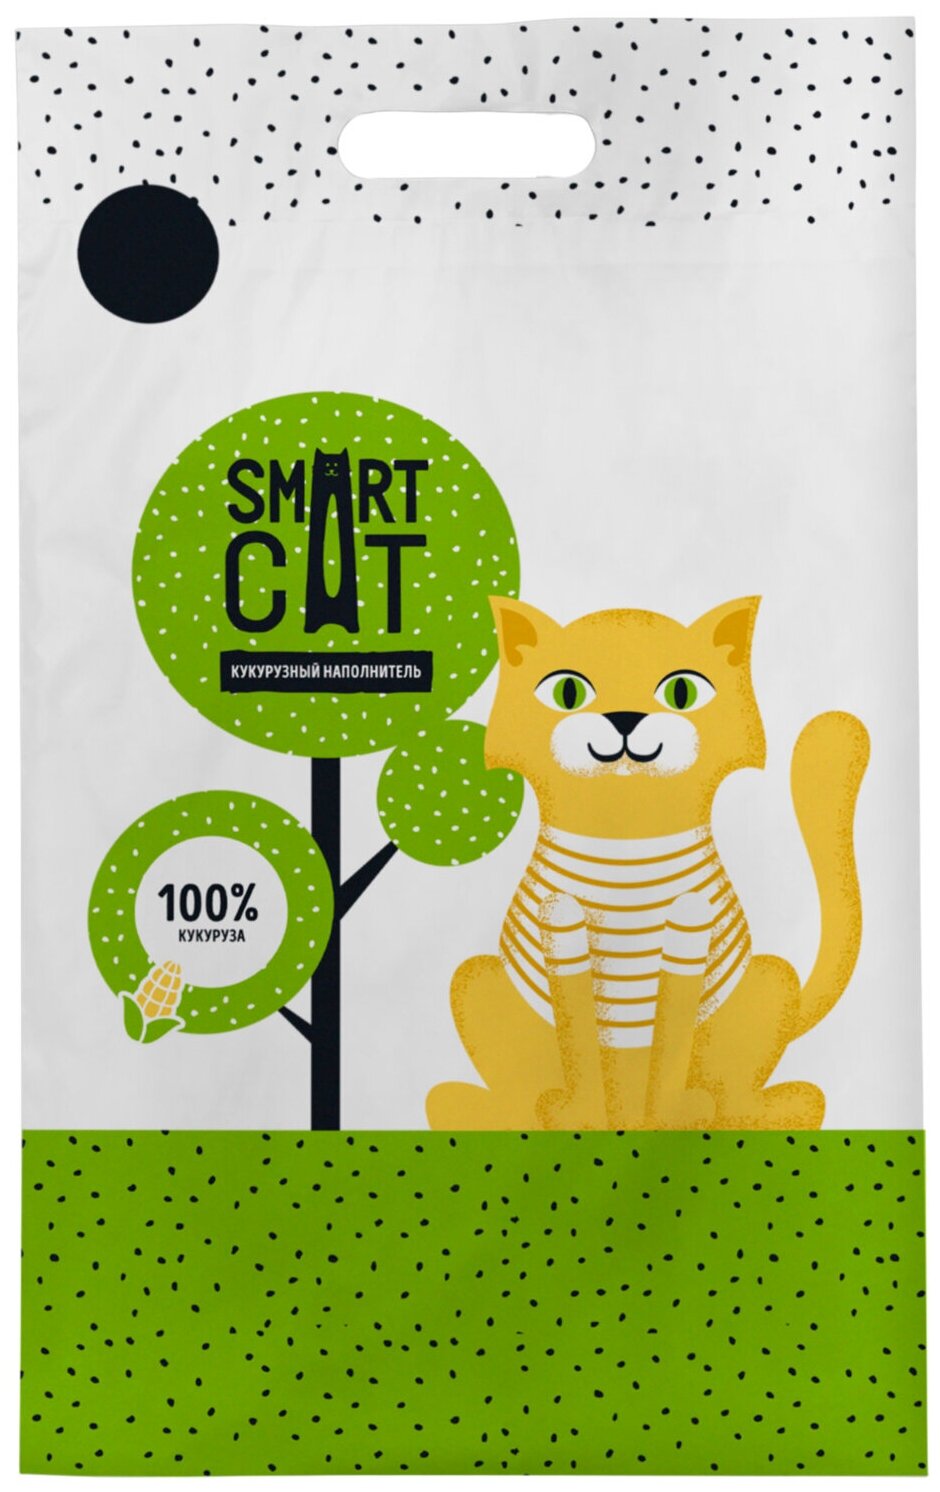 Smart Cat Наполнитель для кошек, кукурузный, 2.5 кг